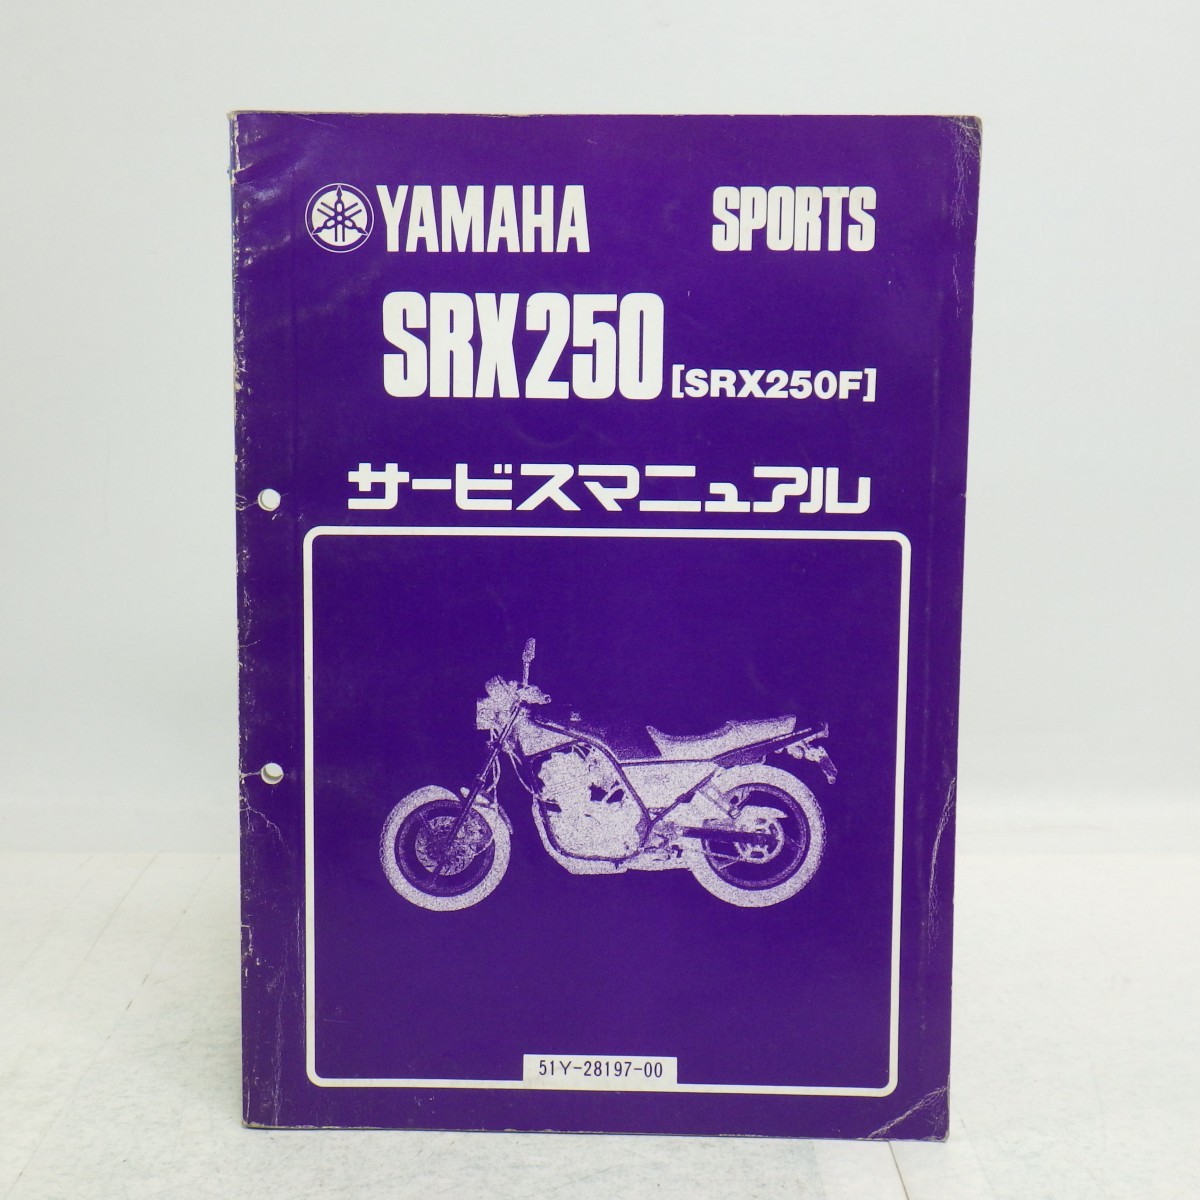 ヤマハ「SRX250/SRX250F」サービスマニュアル/51Y-28197-00/昭和59年発行/YAMAHA SPORTS バイク オートバイ Lの画像1